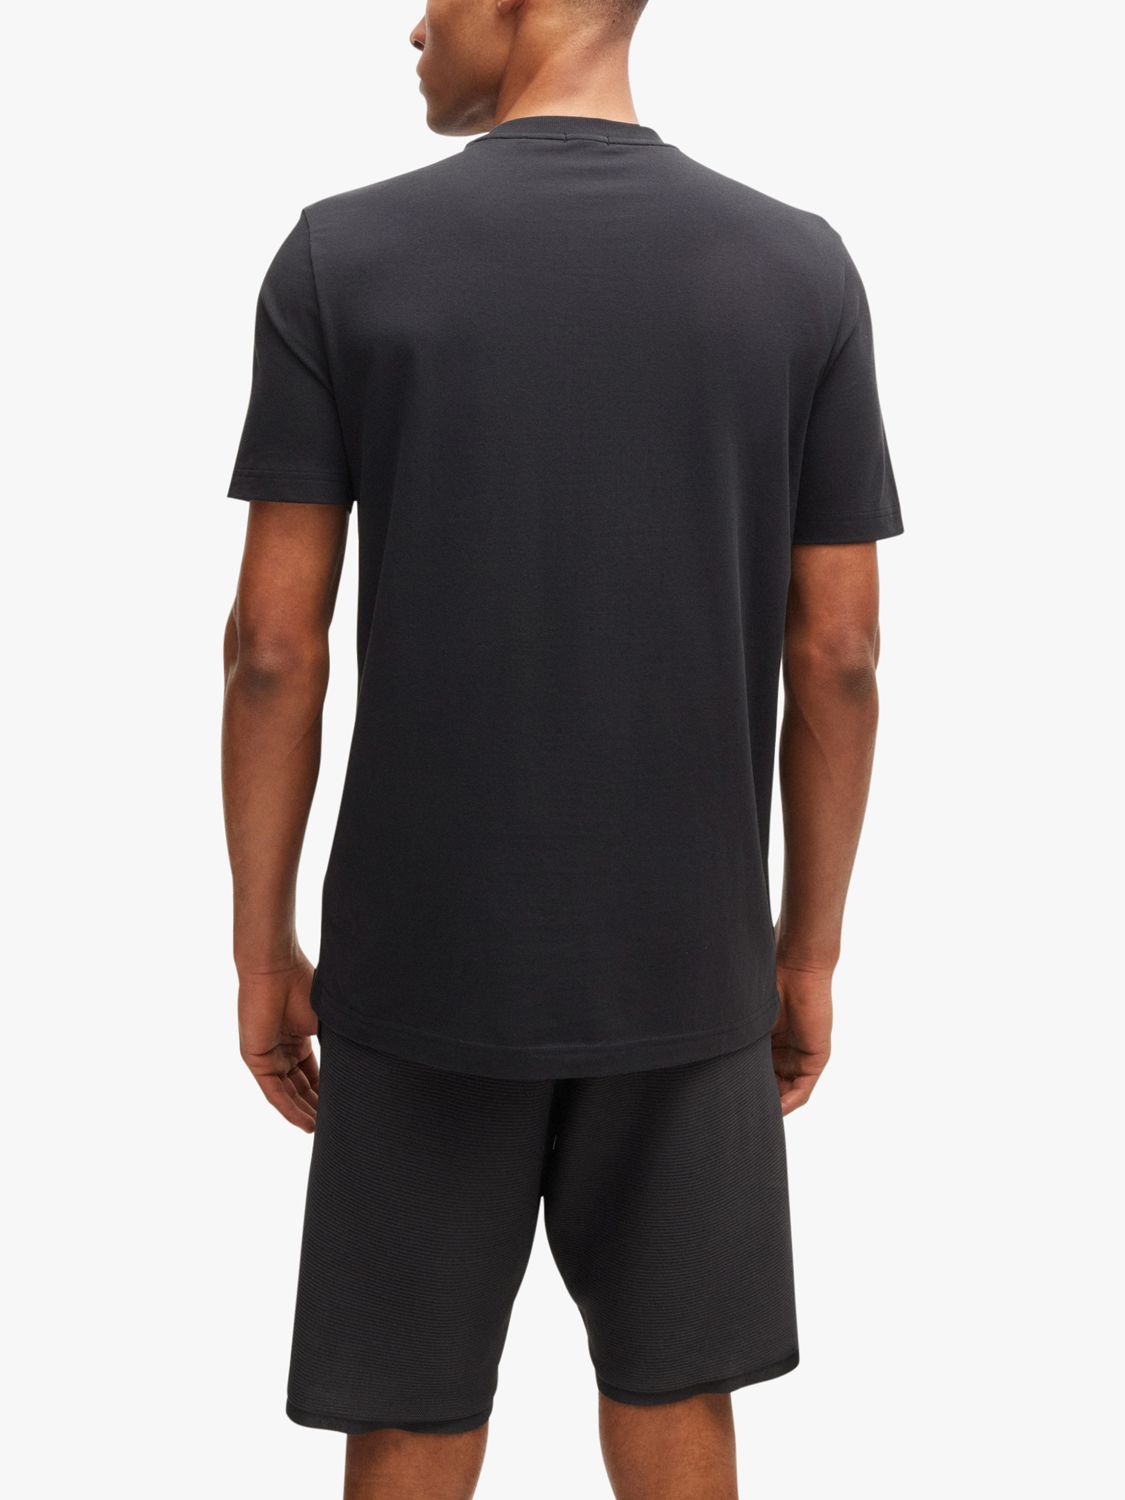 BOSS Essential Short Sleeve T-Shirt, Charcoal, XL